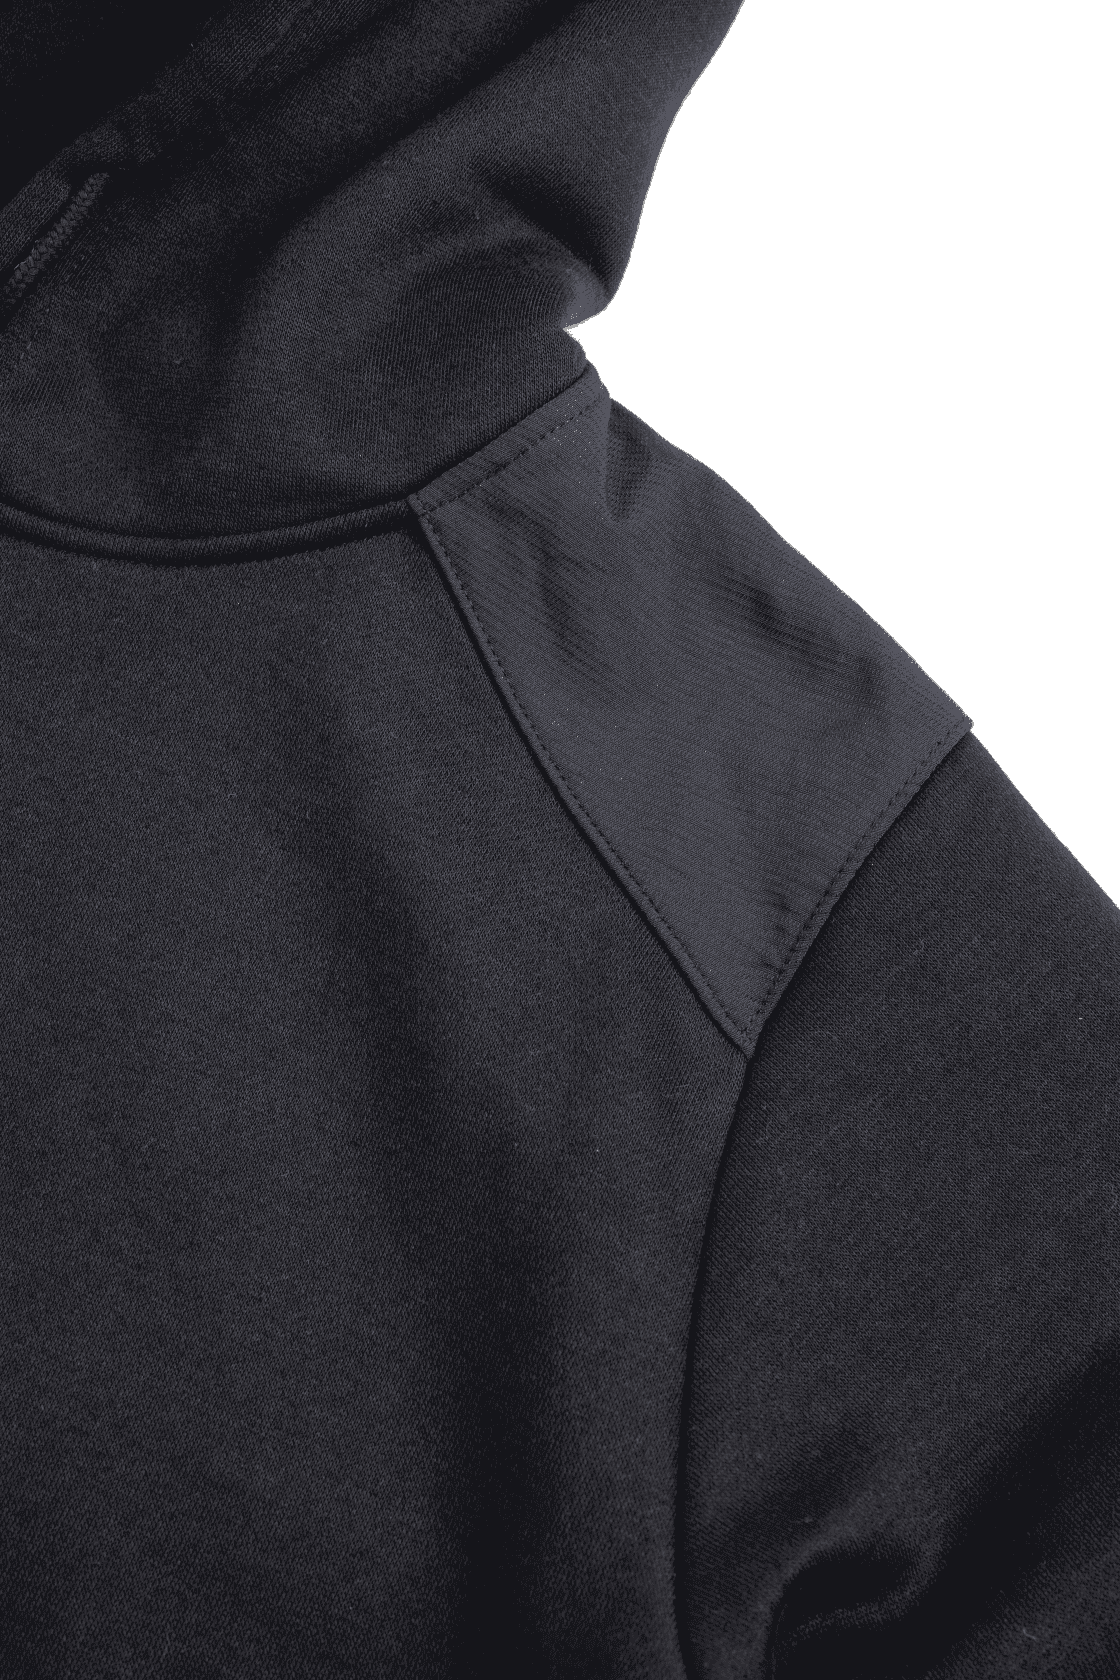 Essentials Hooded Sweatshirt CAT